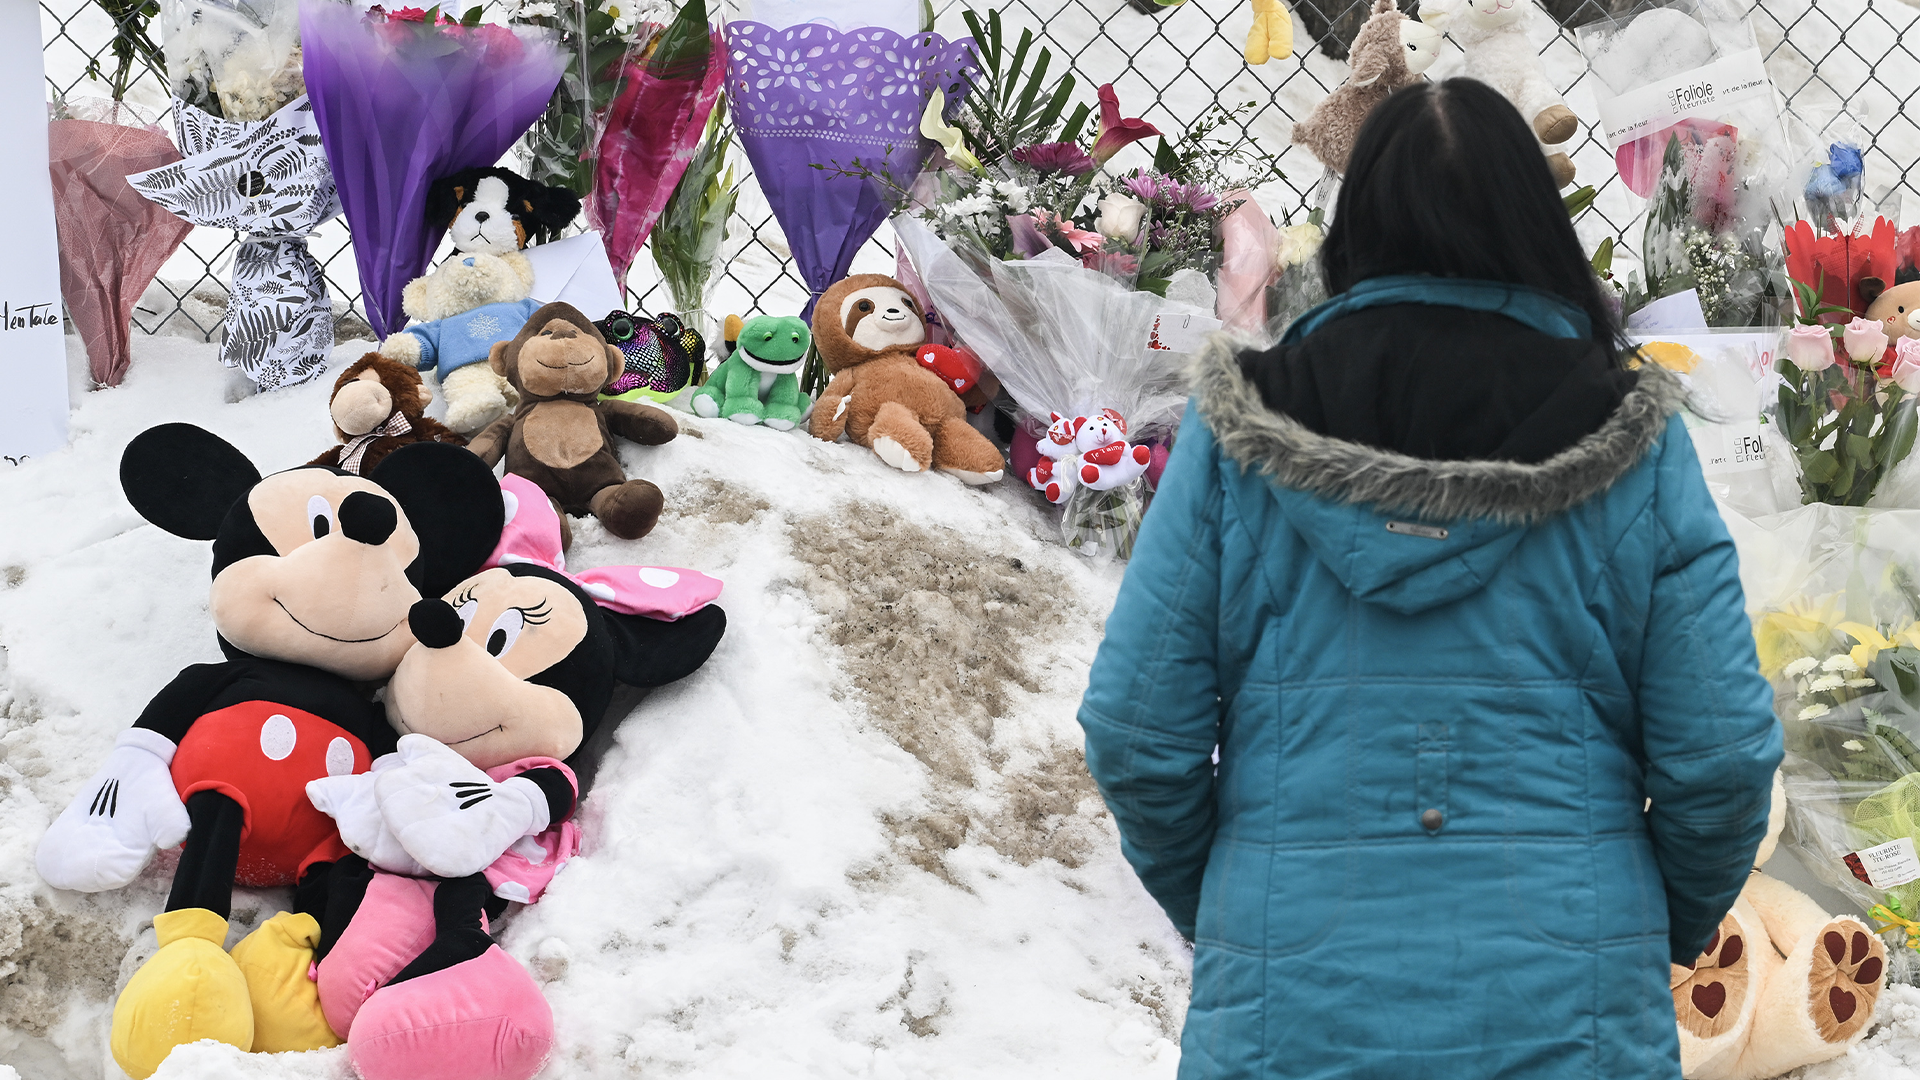 Des funérailles se dérouleront jeudi pour l'un des deux enfants tués après qu'un autobus s'est écrasé dans une garderie mercredi à Laval, juste au nord de Montréal.